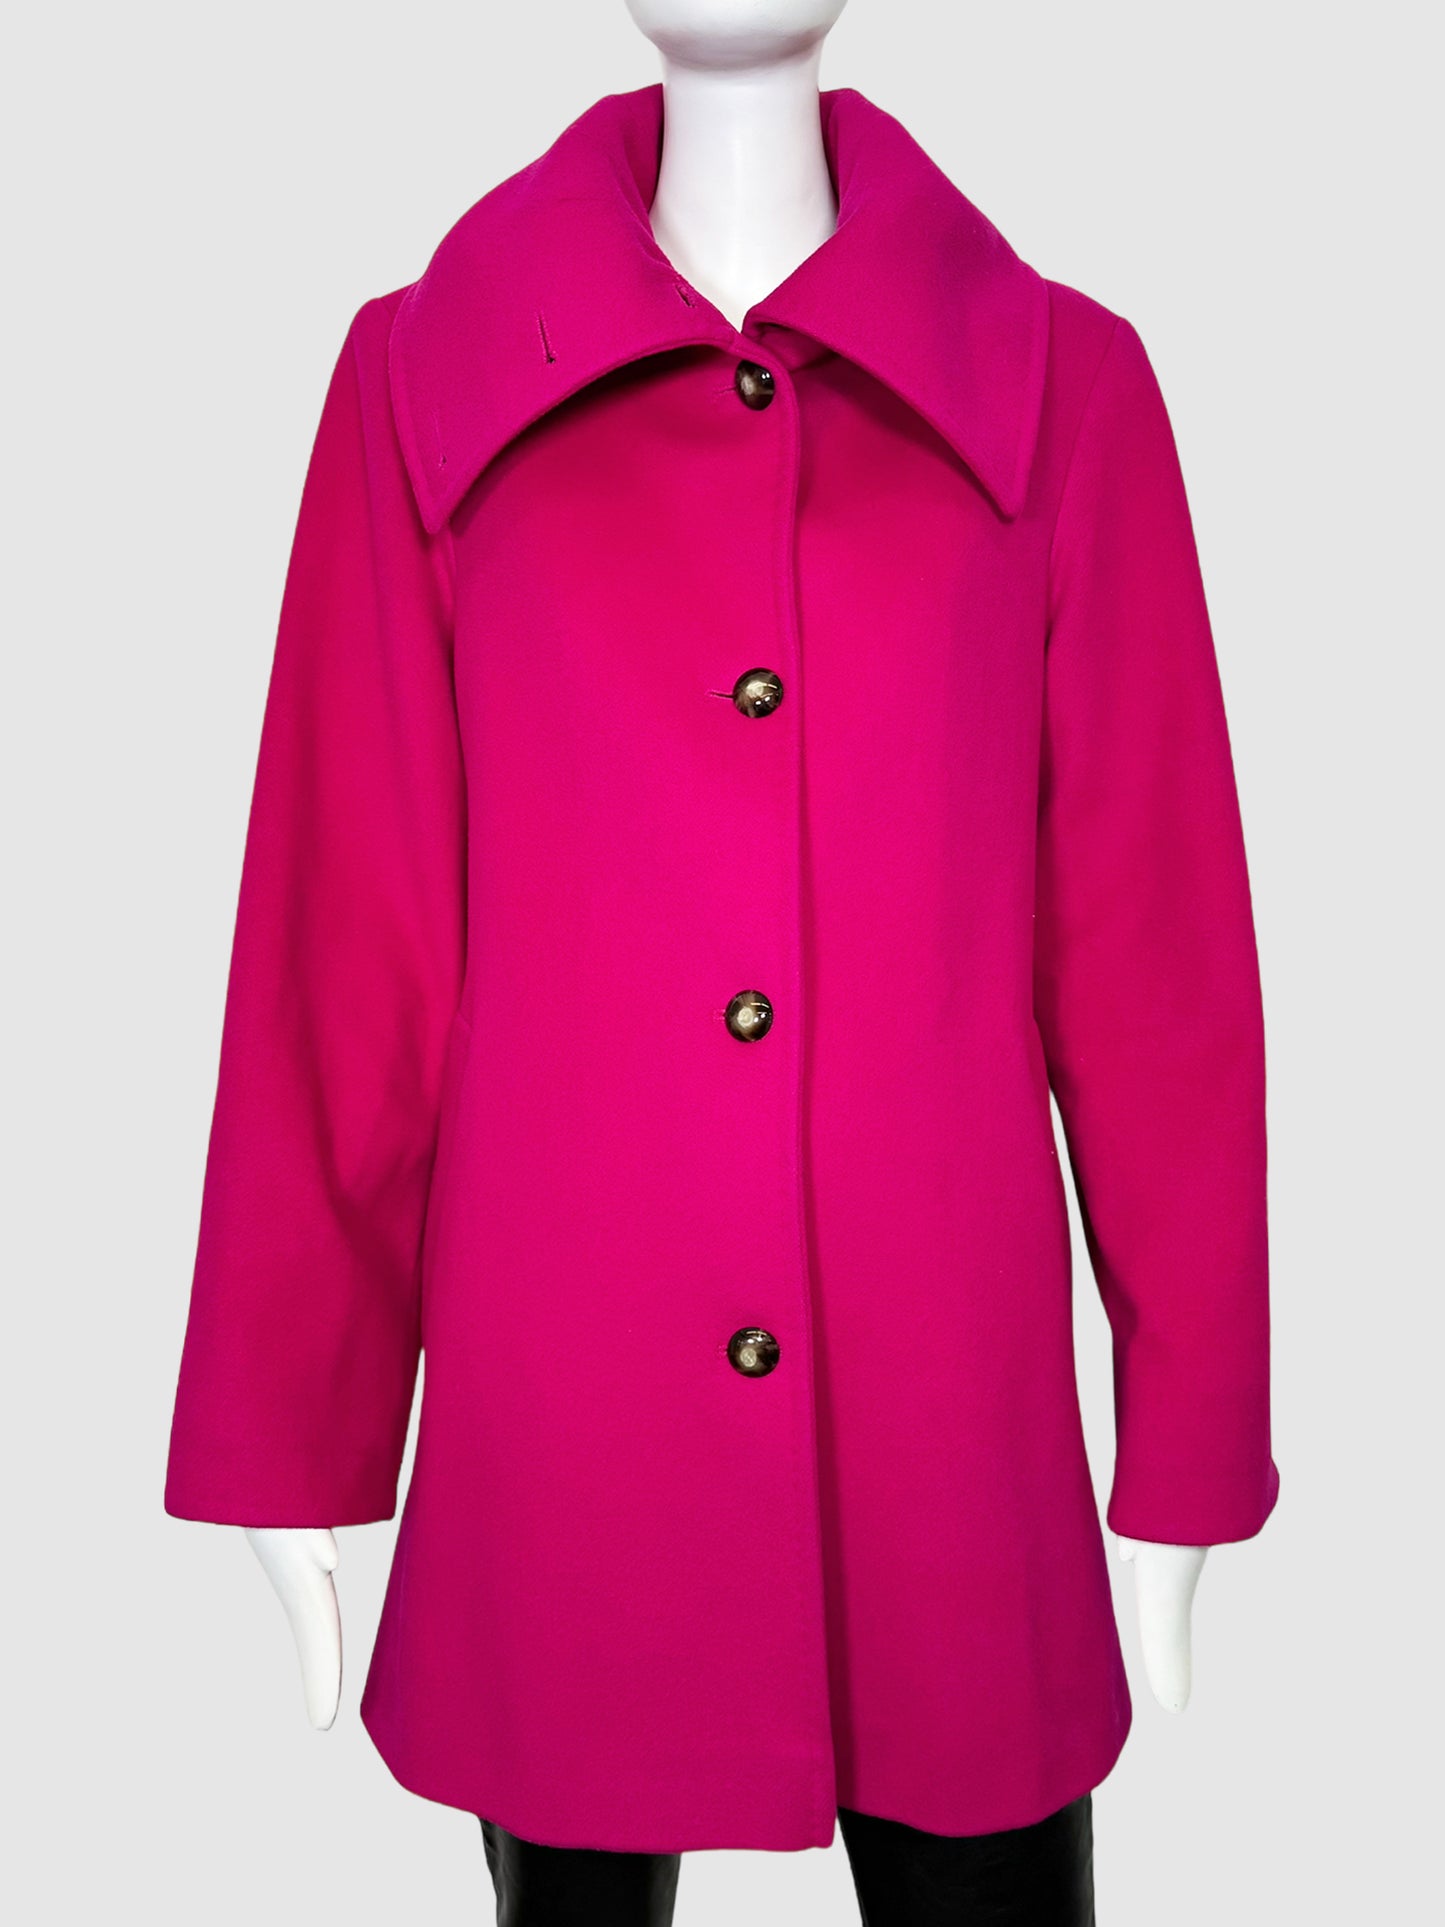 Fleurette Wool Coat - Size 6